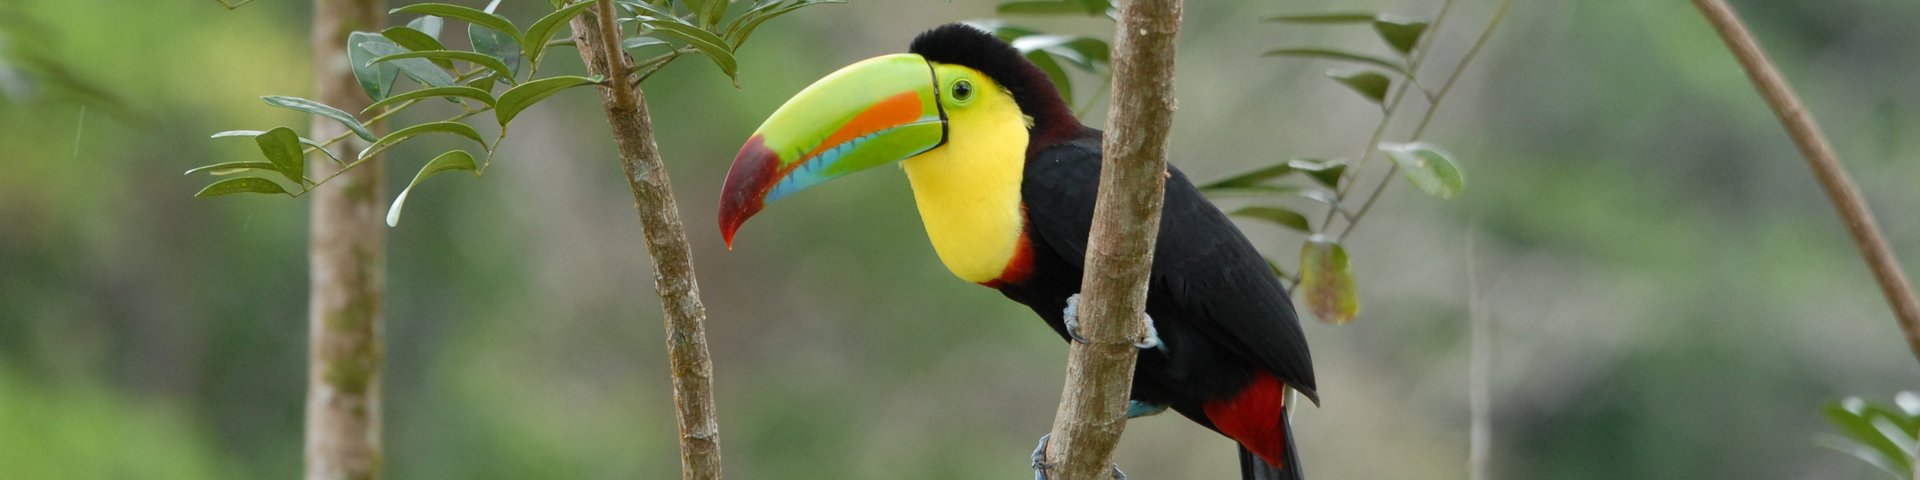 Tucan im Dschungel von Costa Rica